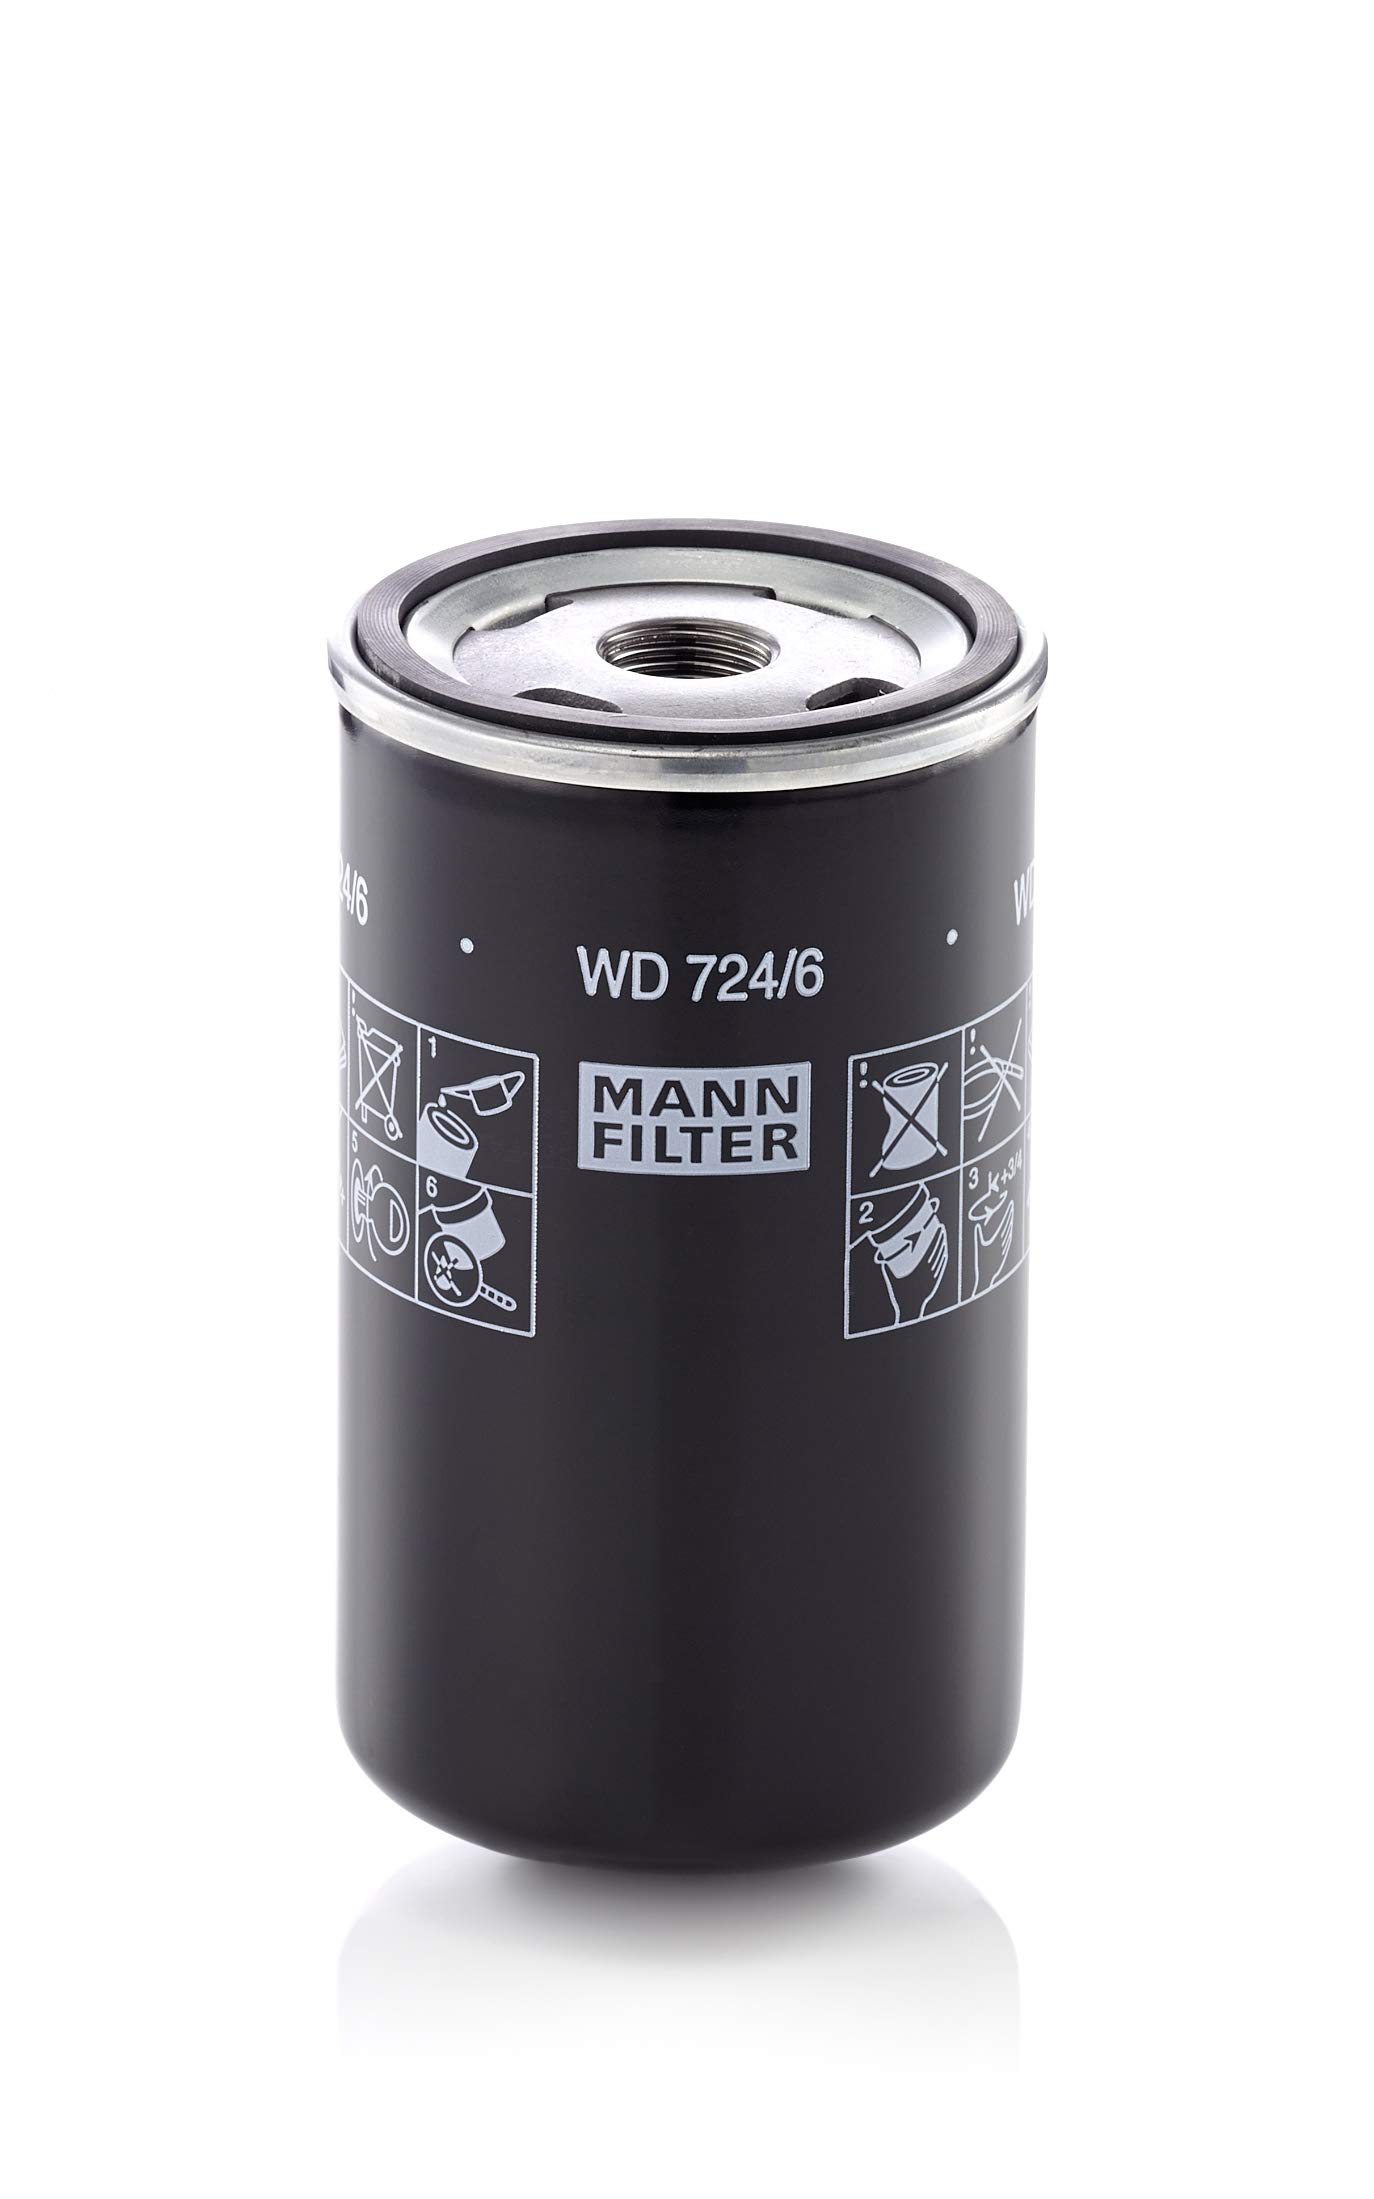 MANN-FILTER WD 724/6 Ölfilter – Hydraulikfilter – Für Nutzfahrzeuge von MANN-FILTER